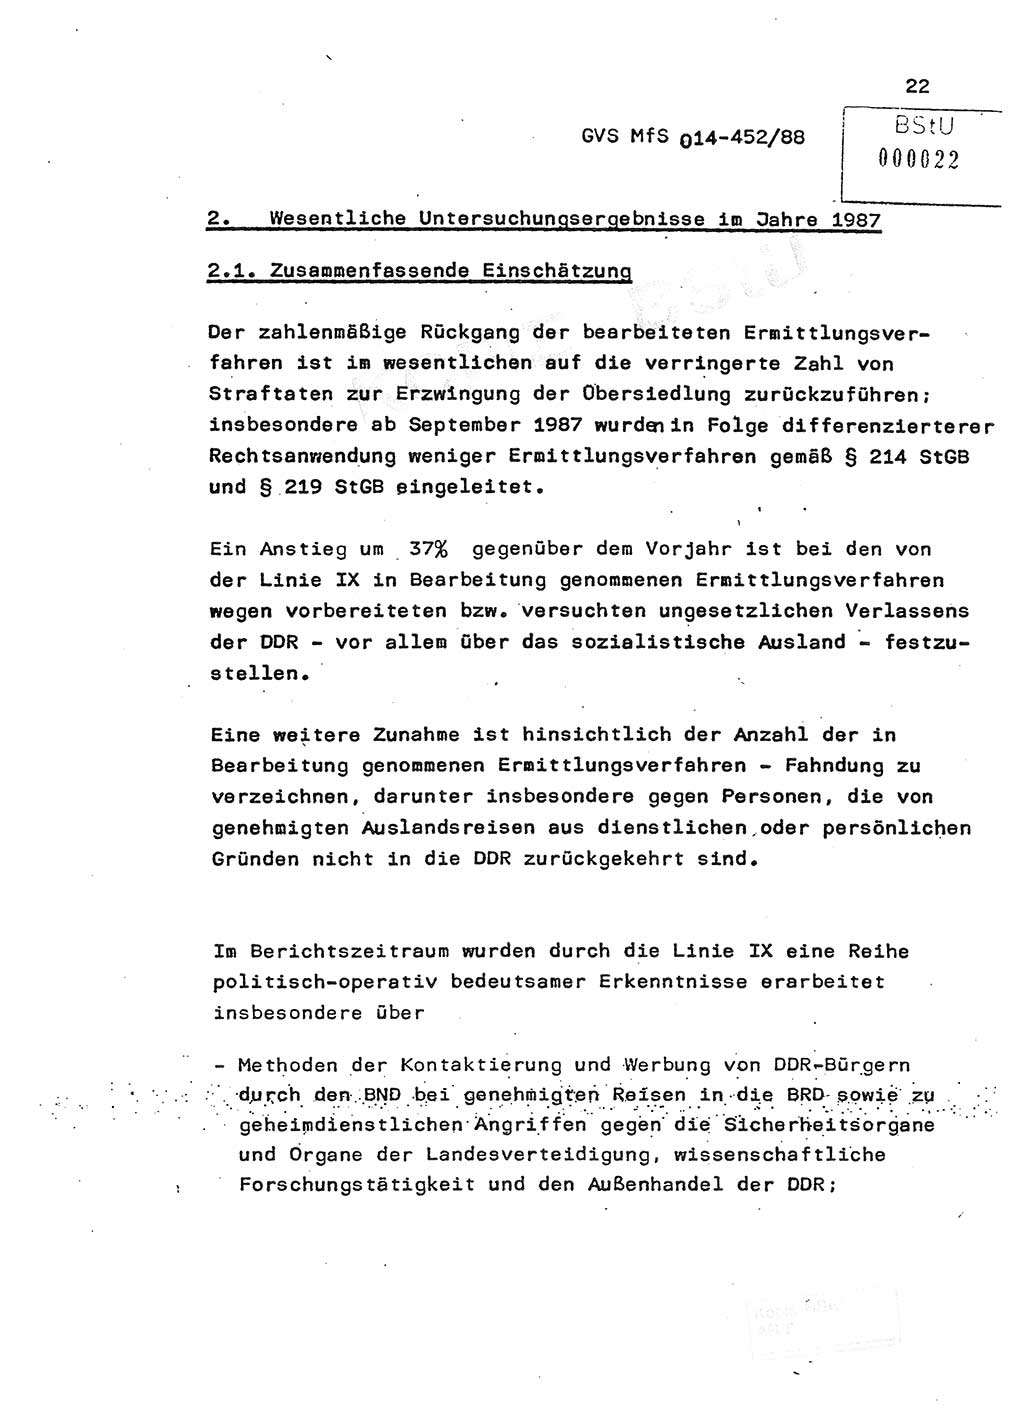 Jahresbericht der Hauptabteilung (HA) Ⅸ 1987, Einschätzung der Wirksamkeit der Untersuchungsarbeit im Jahre 1987, Ministerium für Staatssicherheit (MfS) der Deutschen Demokratischen Republik (DDR), Hauptabteilung Ⅸ, Geheime Verschlußsache (GVS) o014-452/88, Berlin 1988, Seite 22 (Einsch. MfS DDR HA Ⅸ GVS o014-452/88 1987, S. 22)